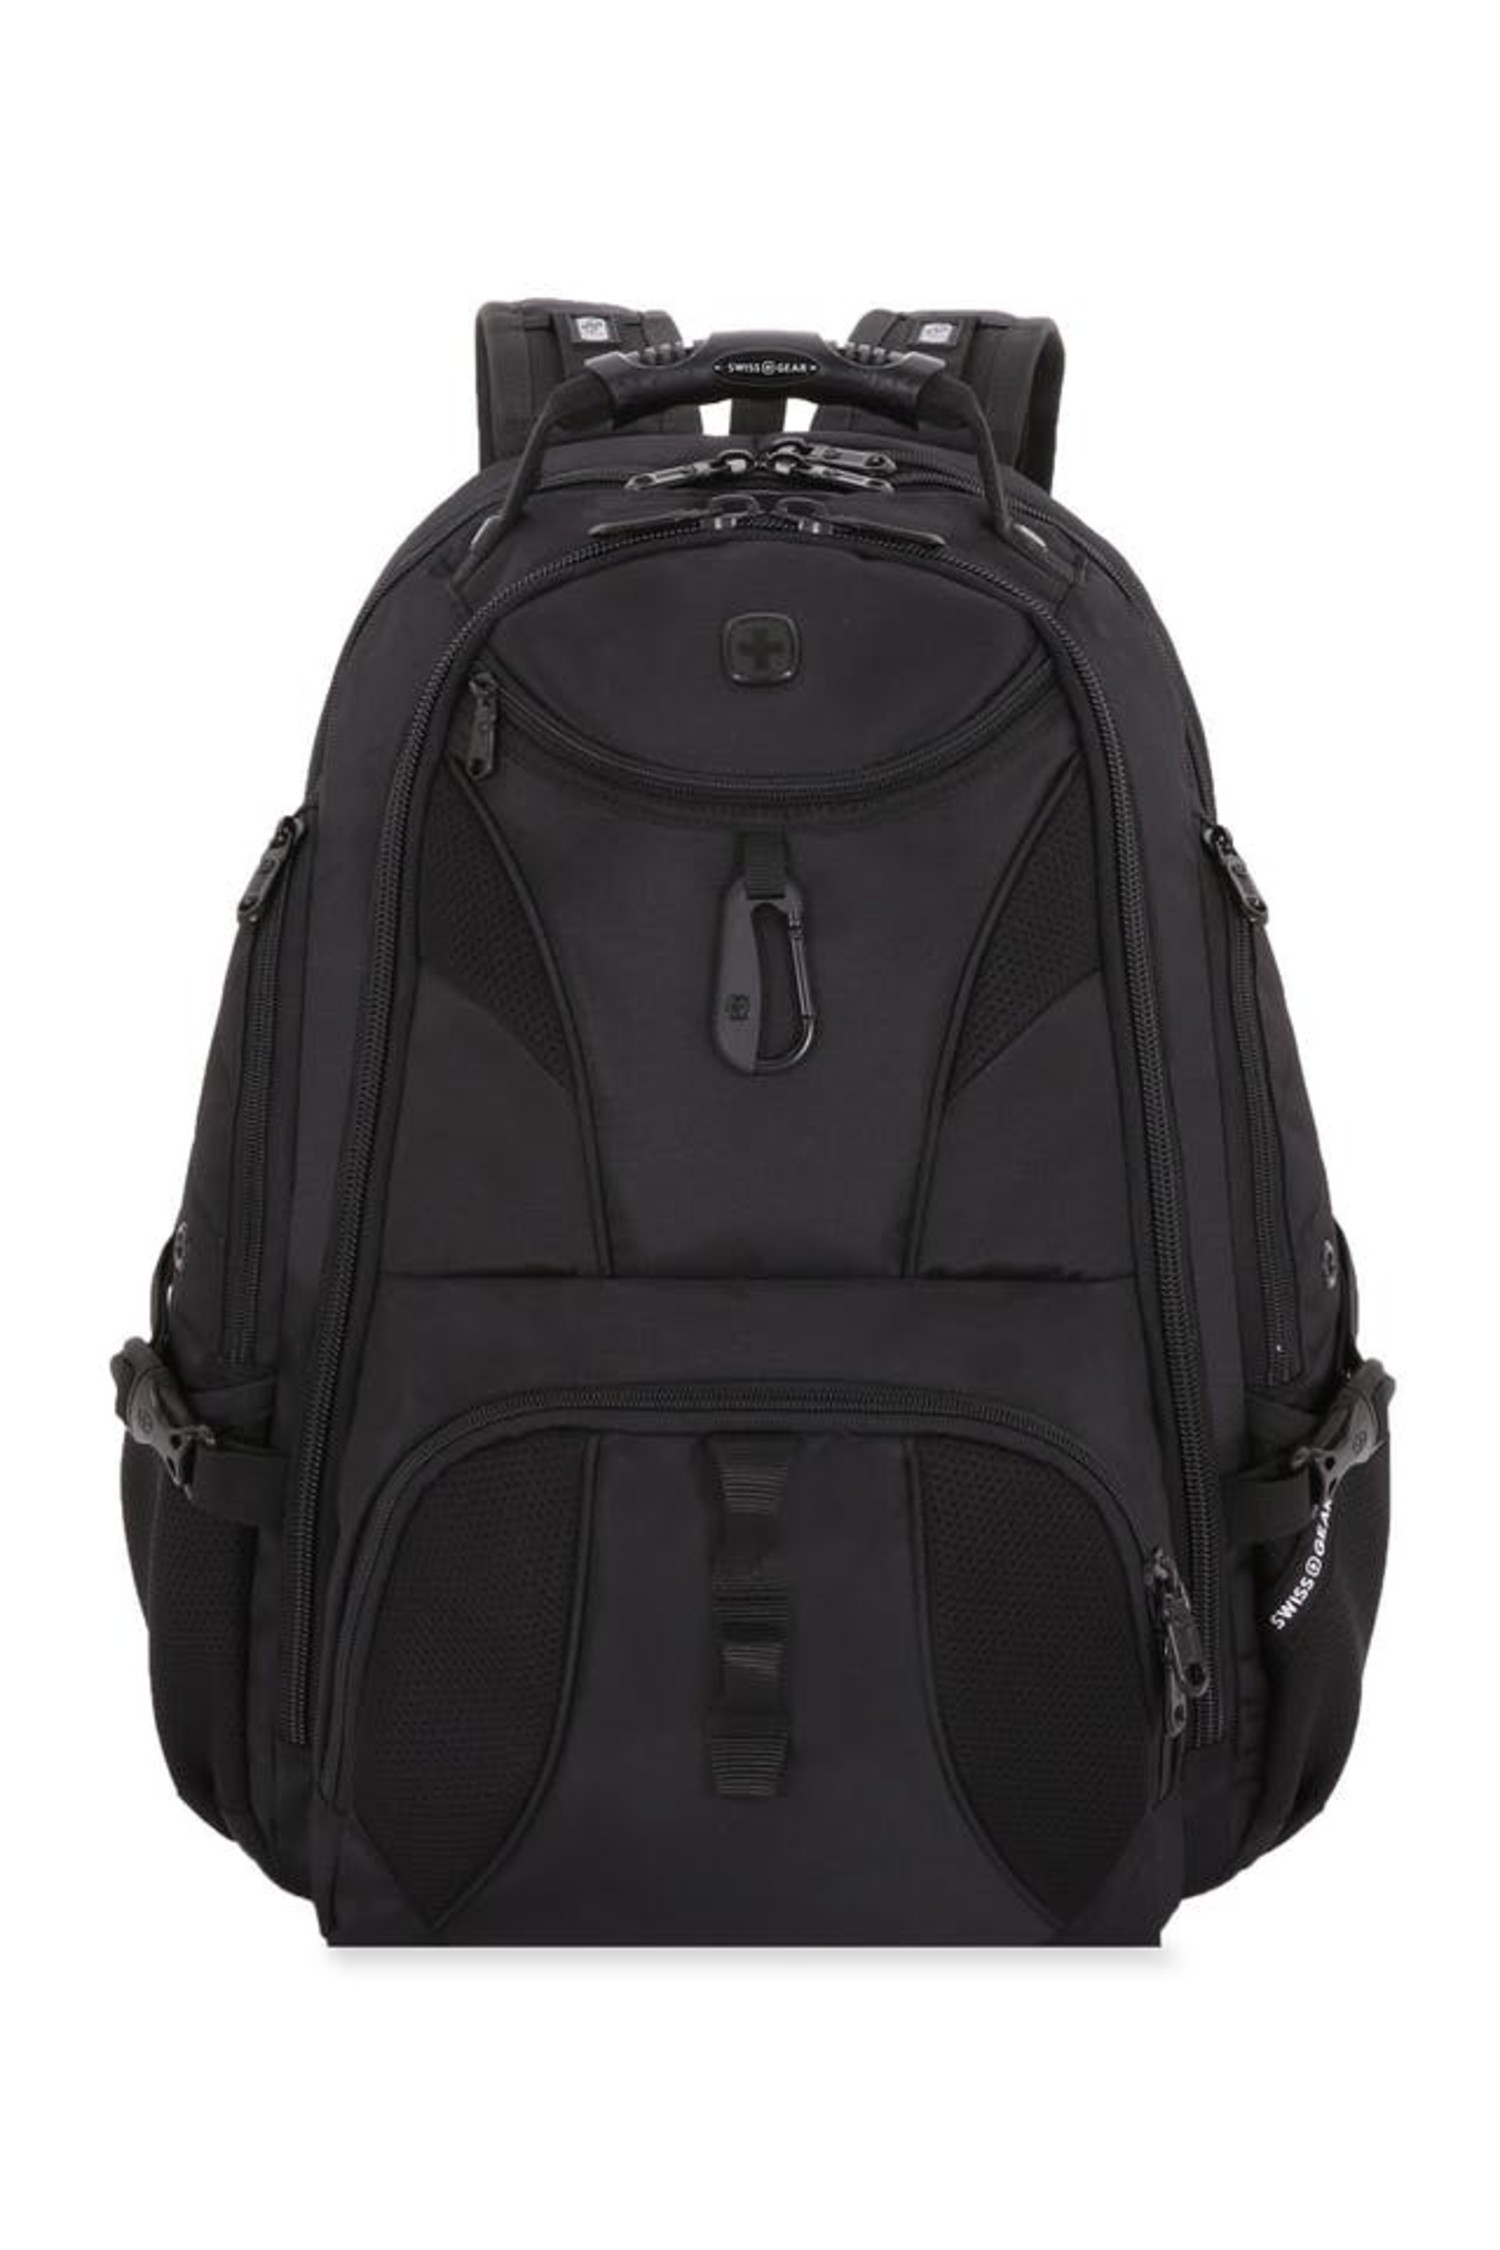 Swiss Gear Backpack Black | Meijer